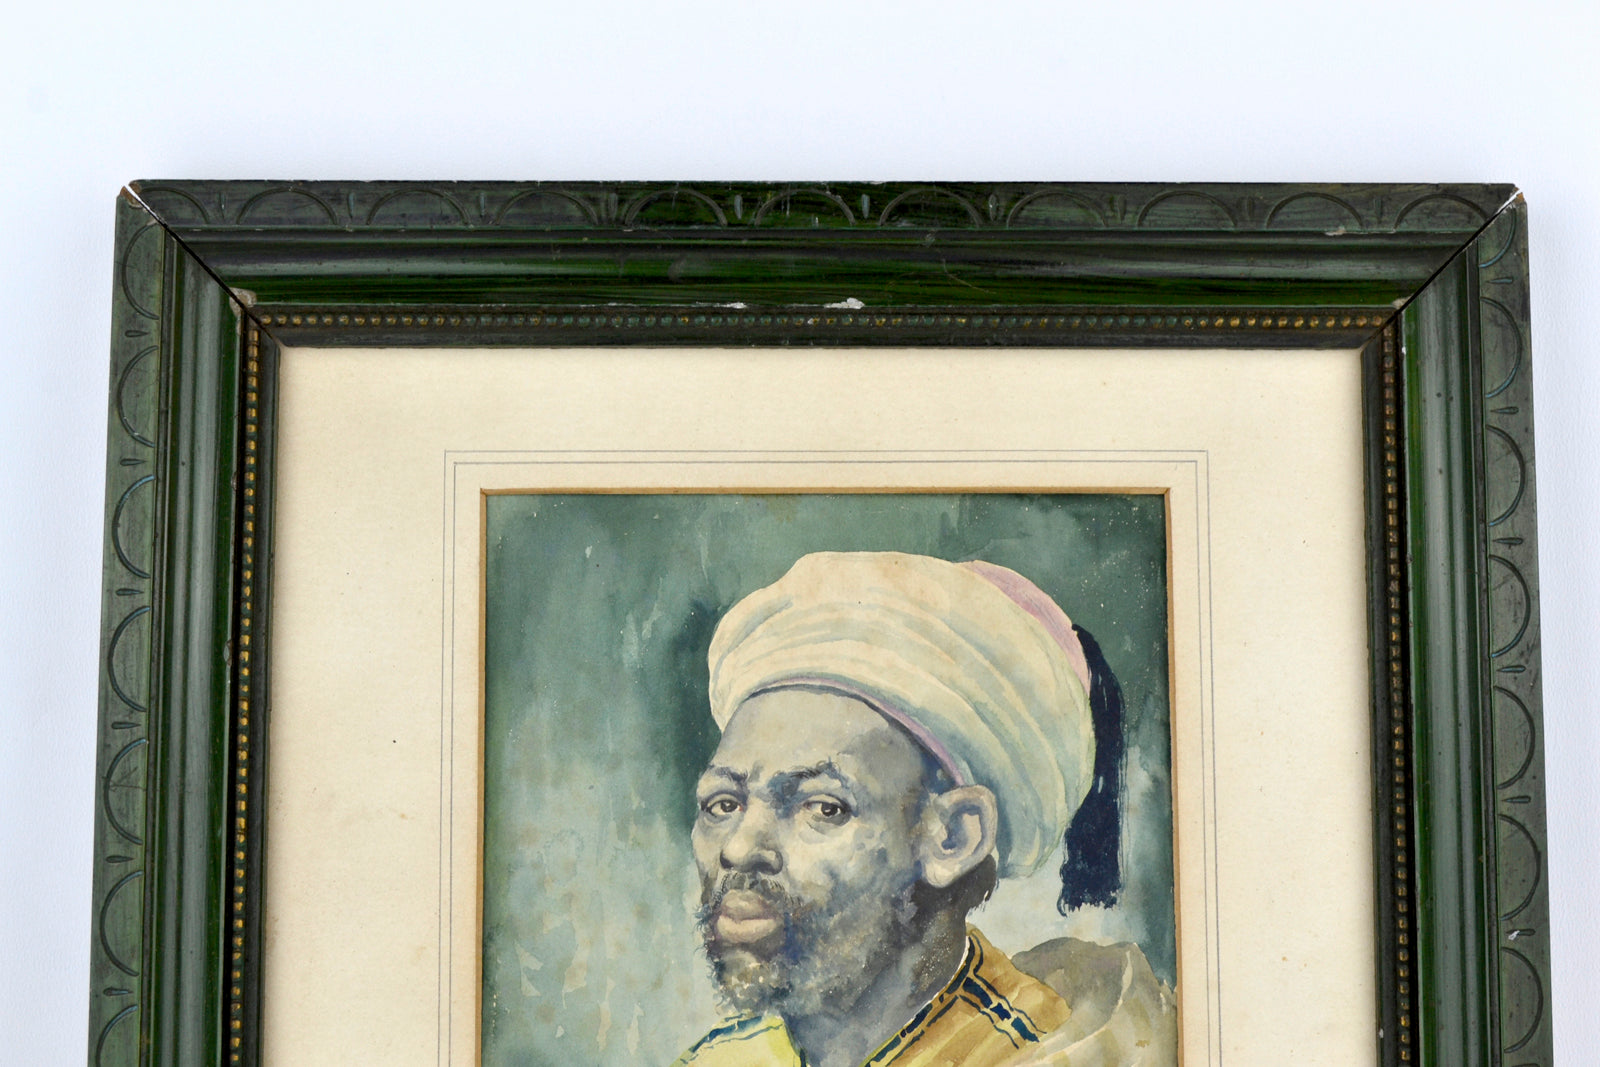 Portrait of a Moor